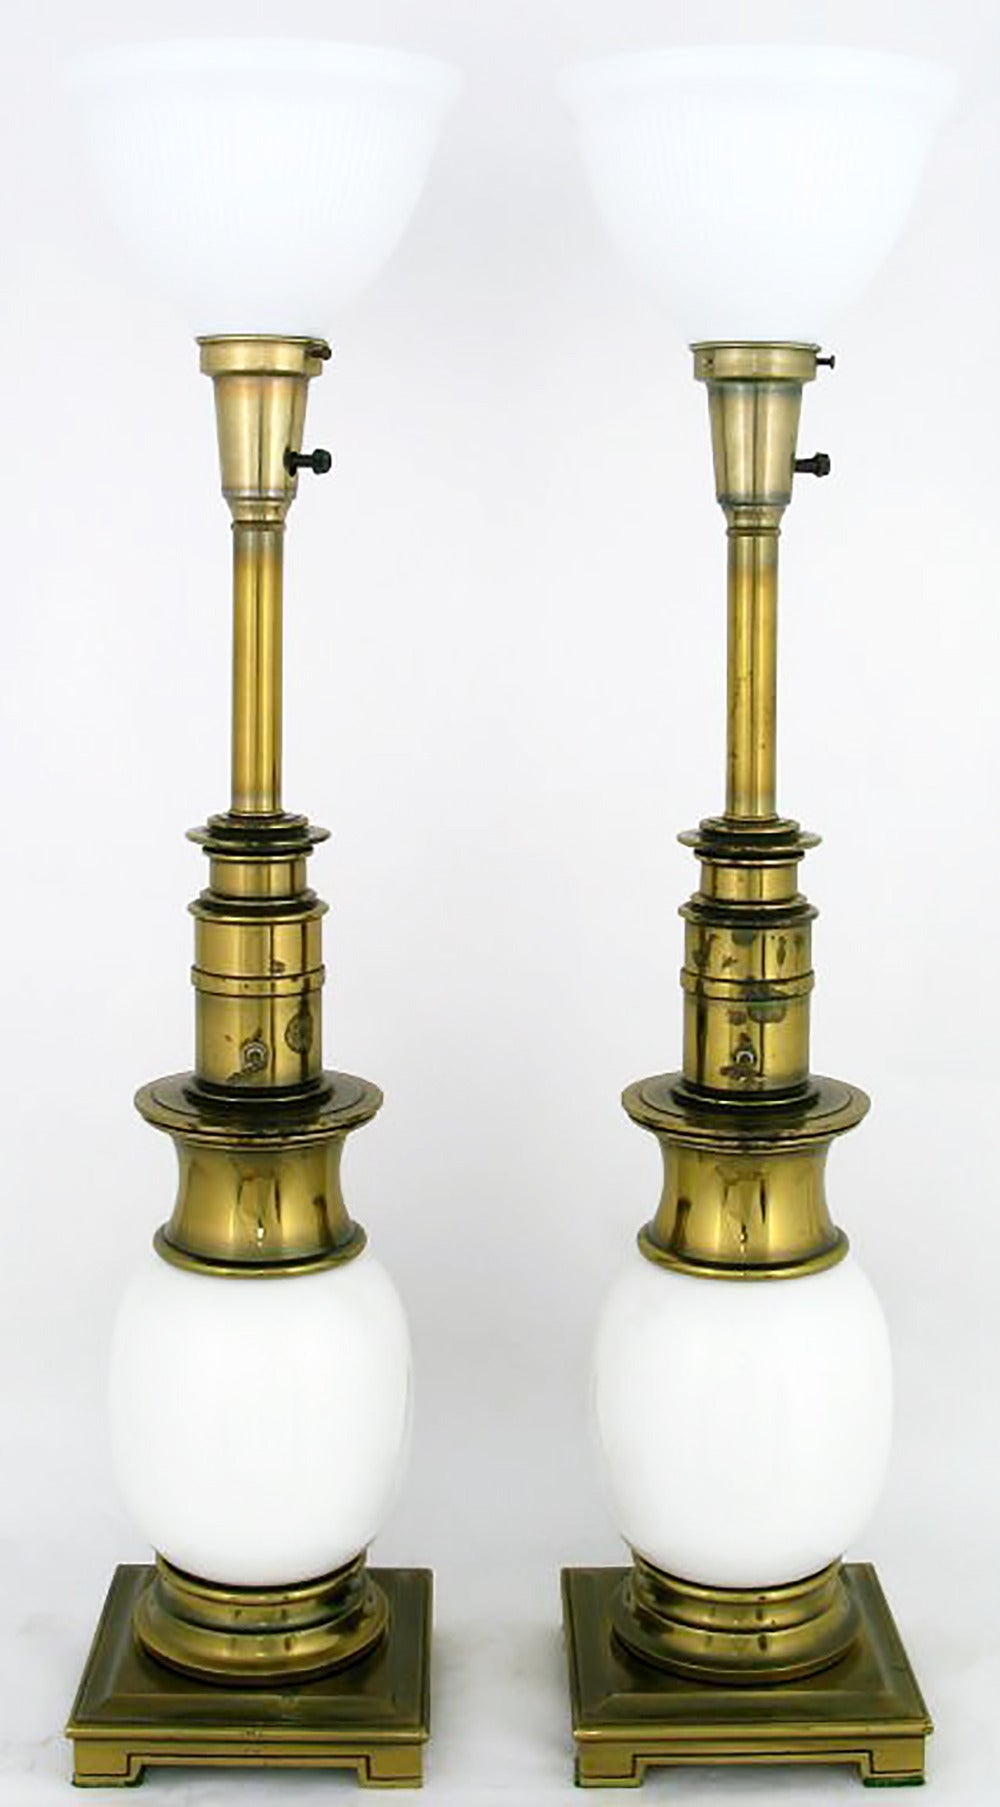 Ein sehr elegantes Paar Tischlampen von Stiffeal. Sie haben einen Korpus aus Straußenei-Porzellan mit quadratischen Sockeln und Kapitellen aus antikisiertem Messing. Der Schlüsselschalter und die originalen Milchglasdiffusoren machen den Reiz aus.